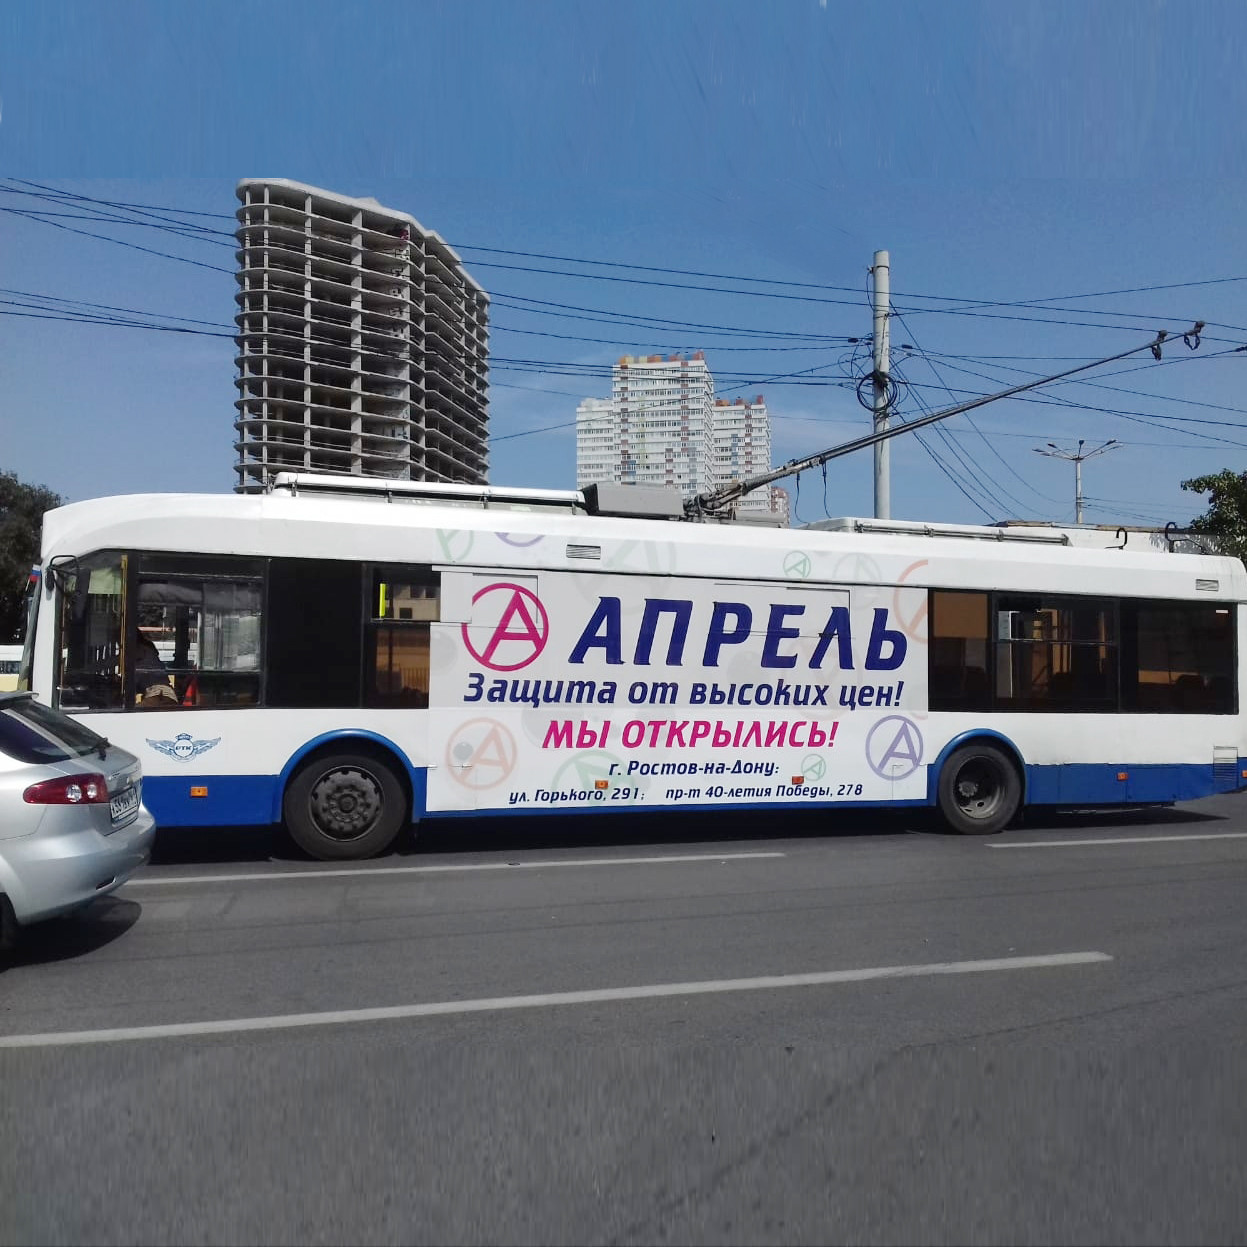 Троллейбус белый с рекламой Апрель